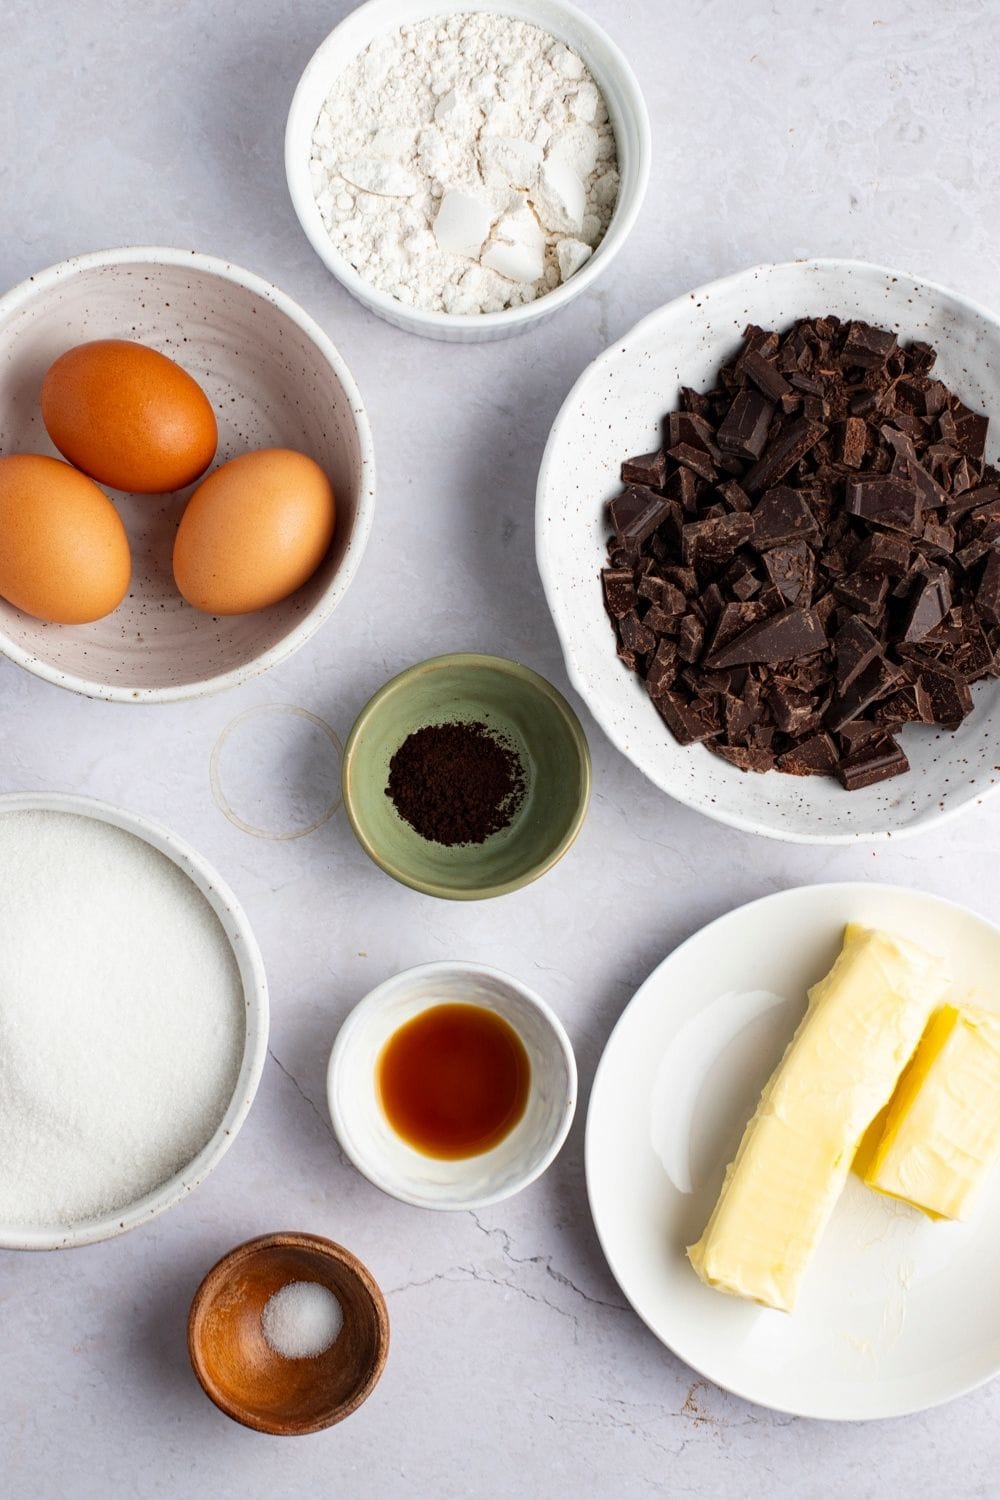 Godiva Chocolate Brownies Ingredients: Flour, Eggs, Chocolate, Espresso Powder, Sugar, Vanilla, Butter, Salt